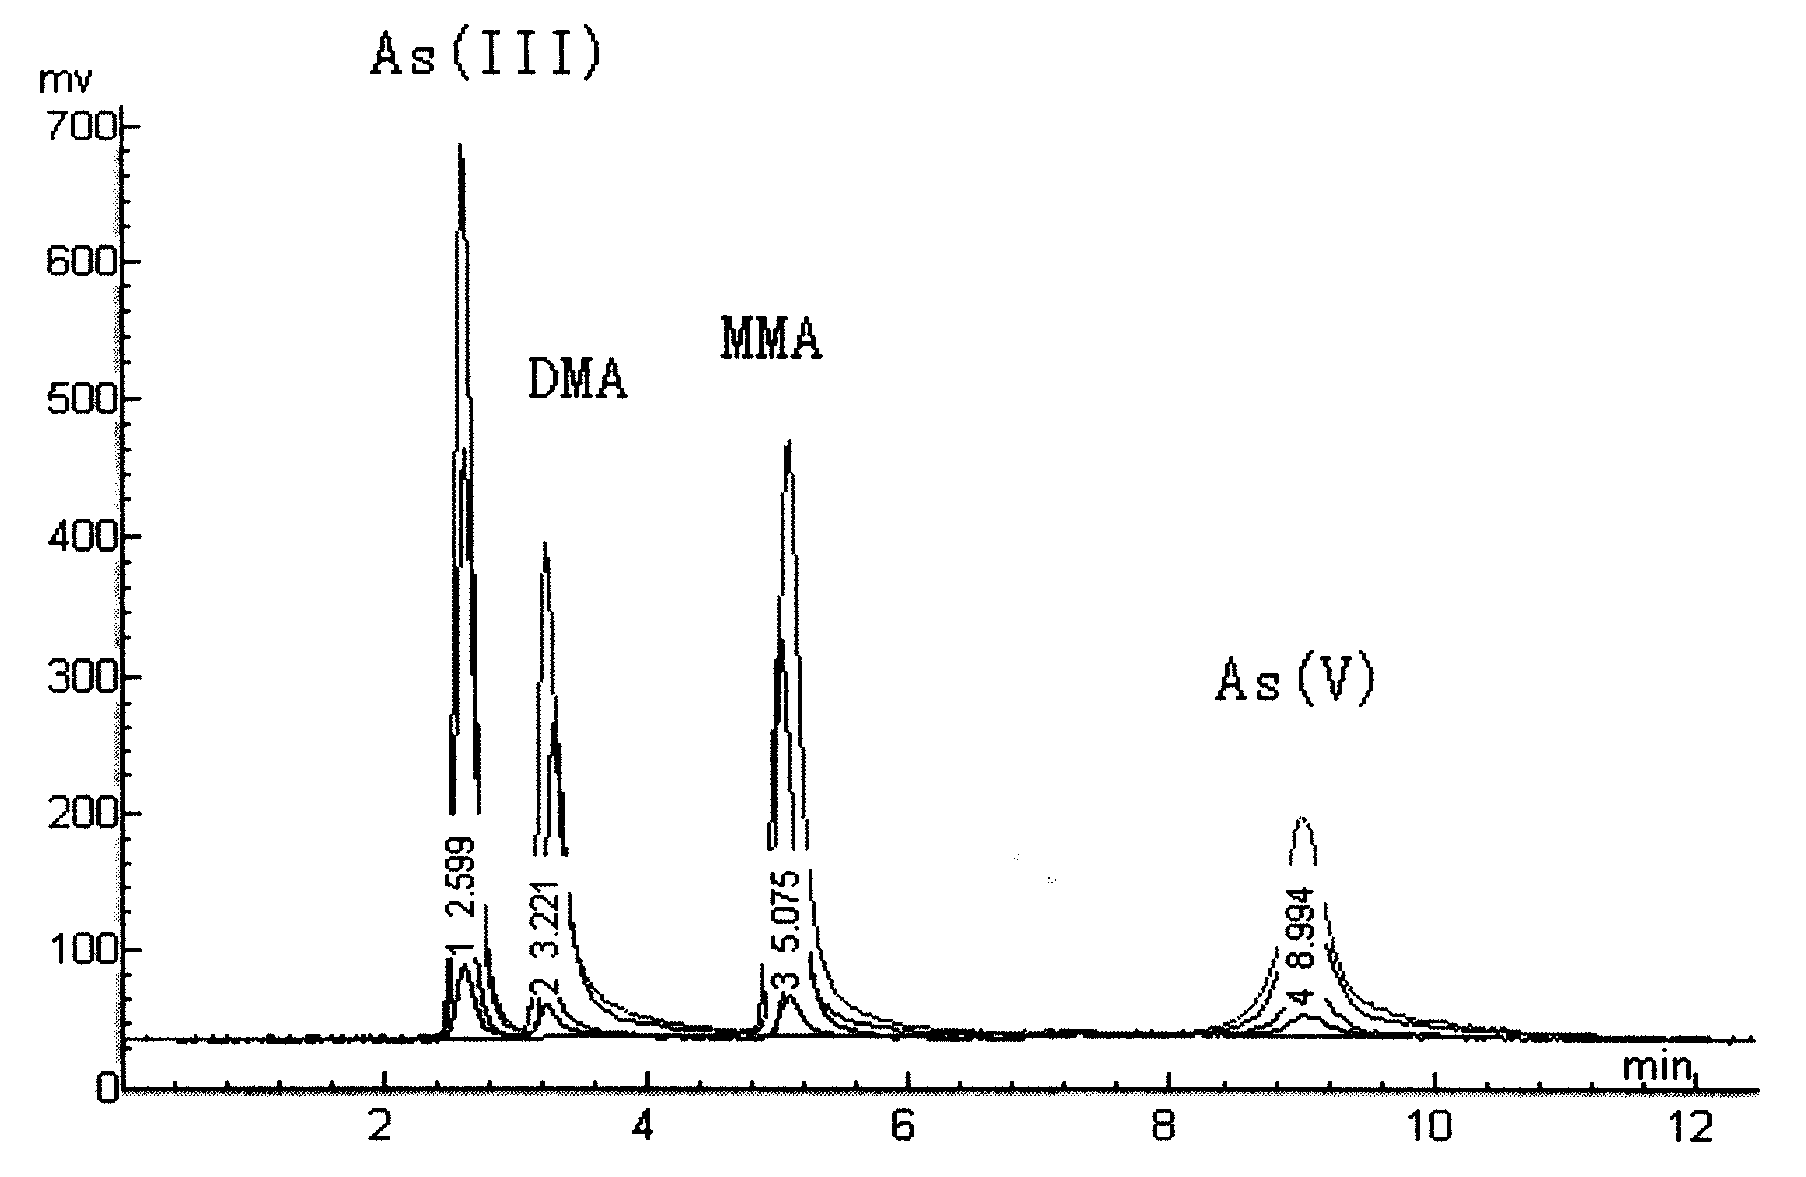 Aquatic product inorganic arsenic determination method